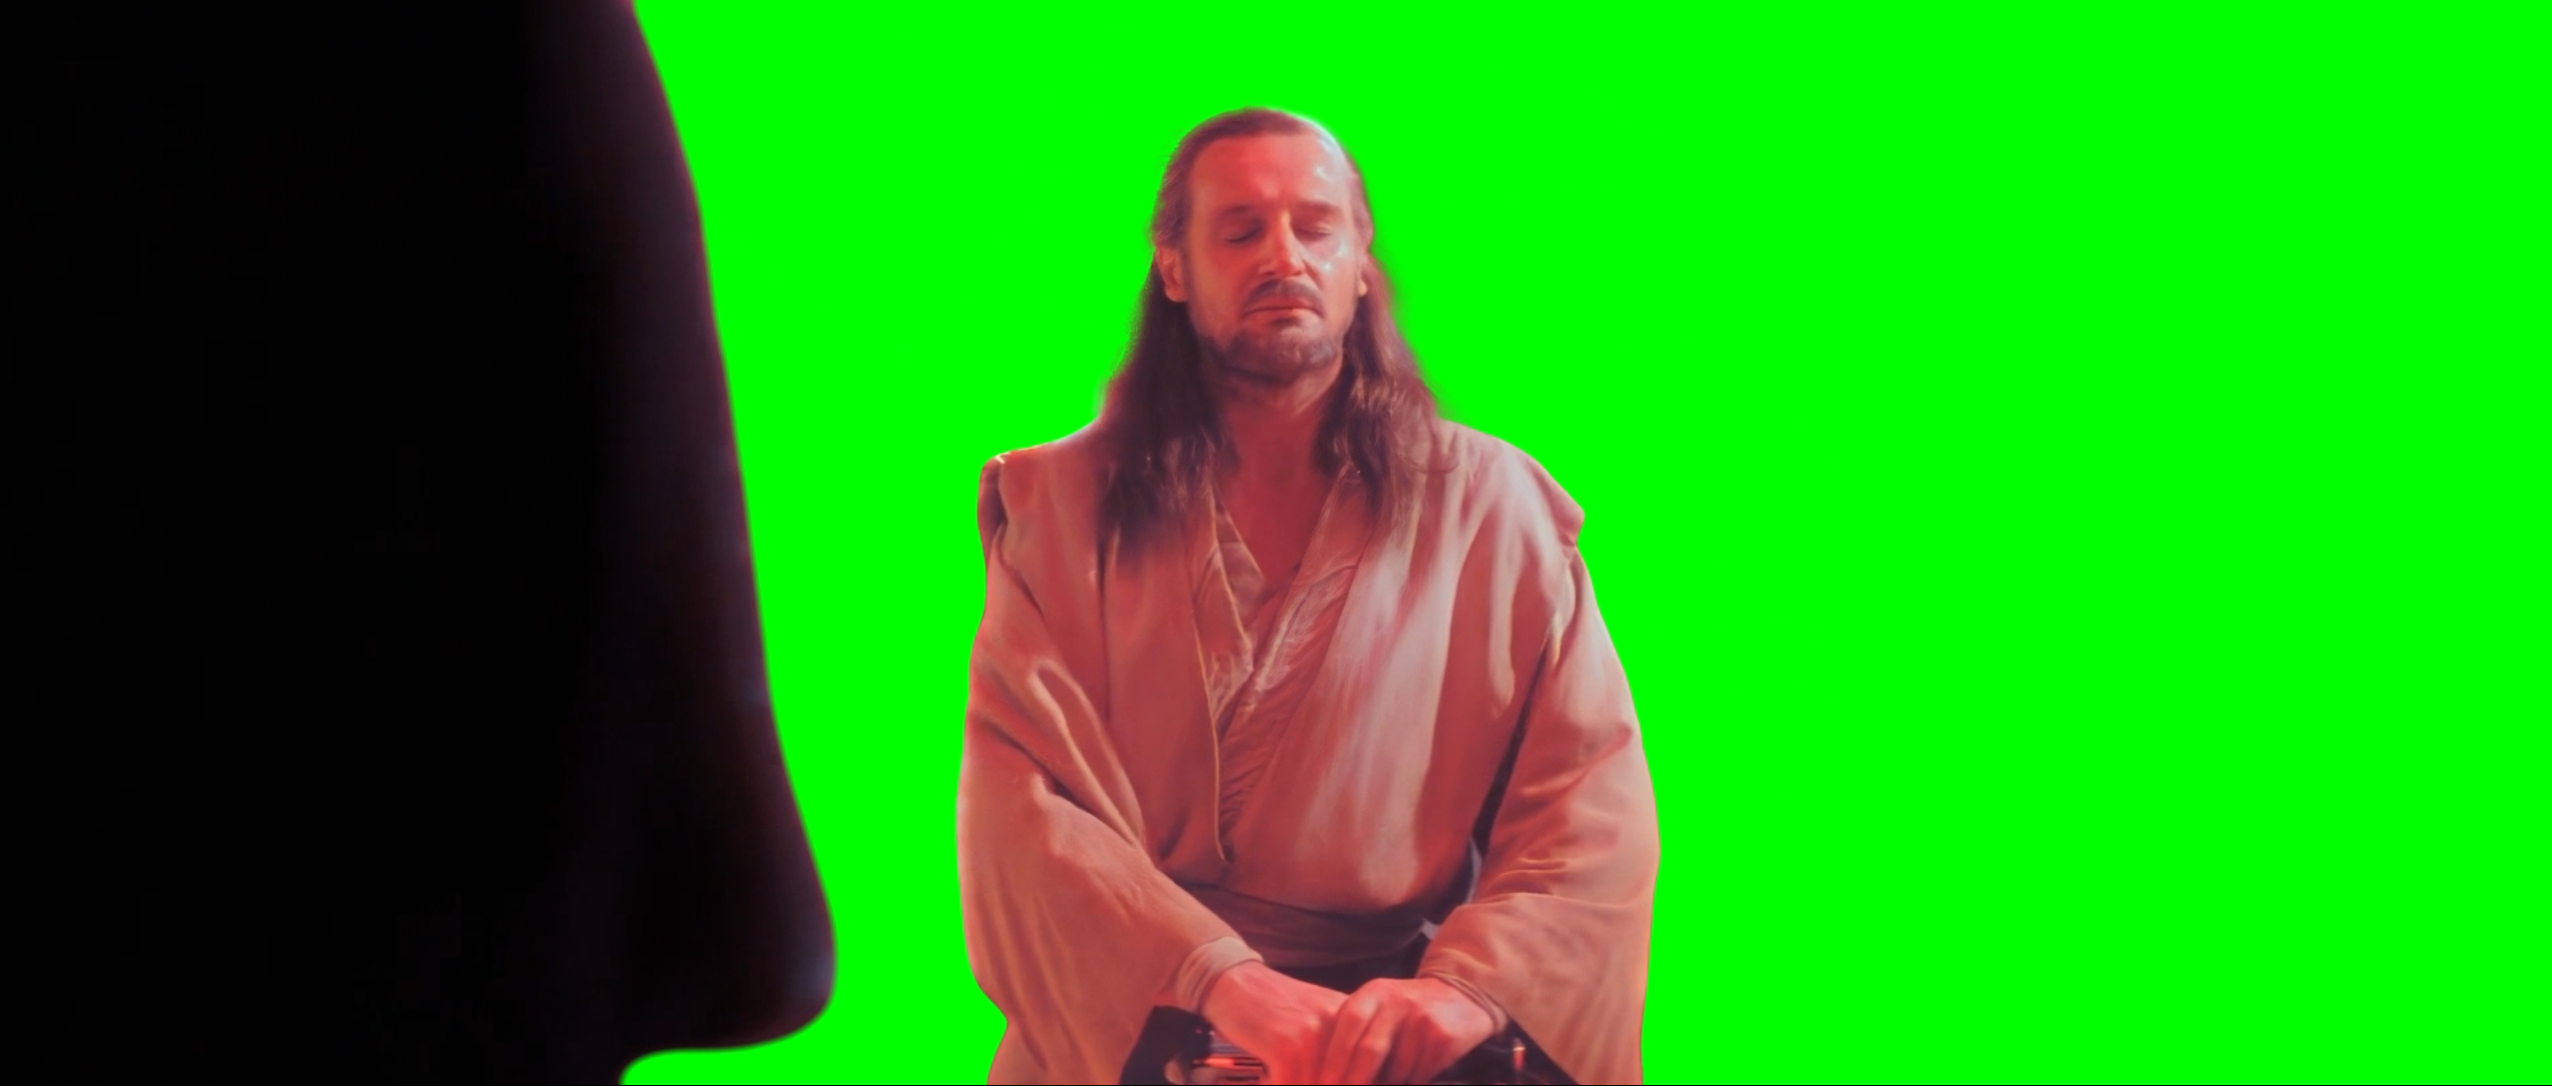 Darth Maul Waiting meme V2 - Star Wars (Green Screen)